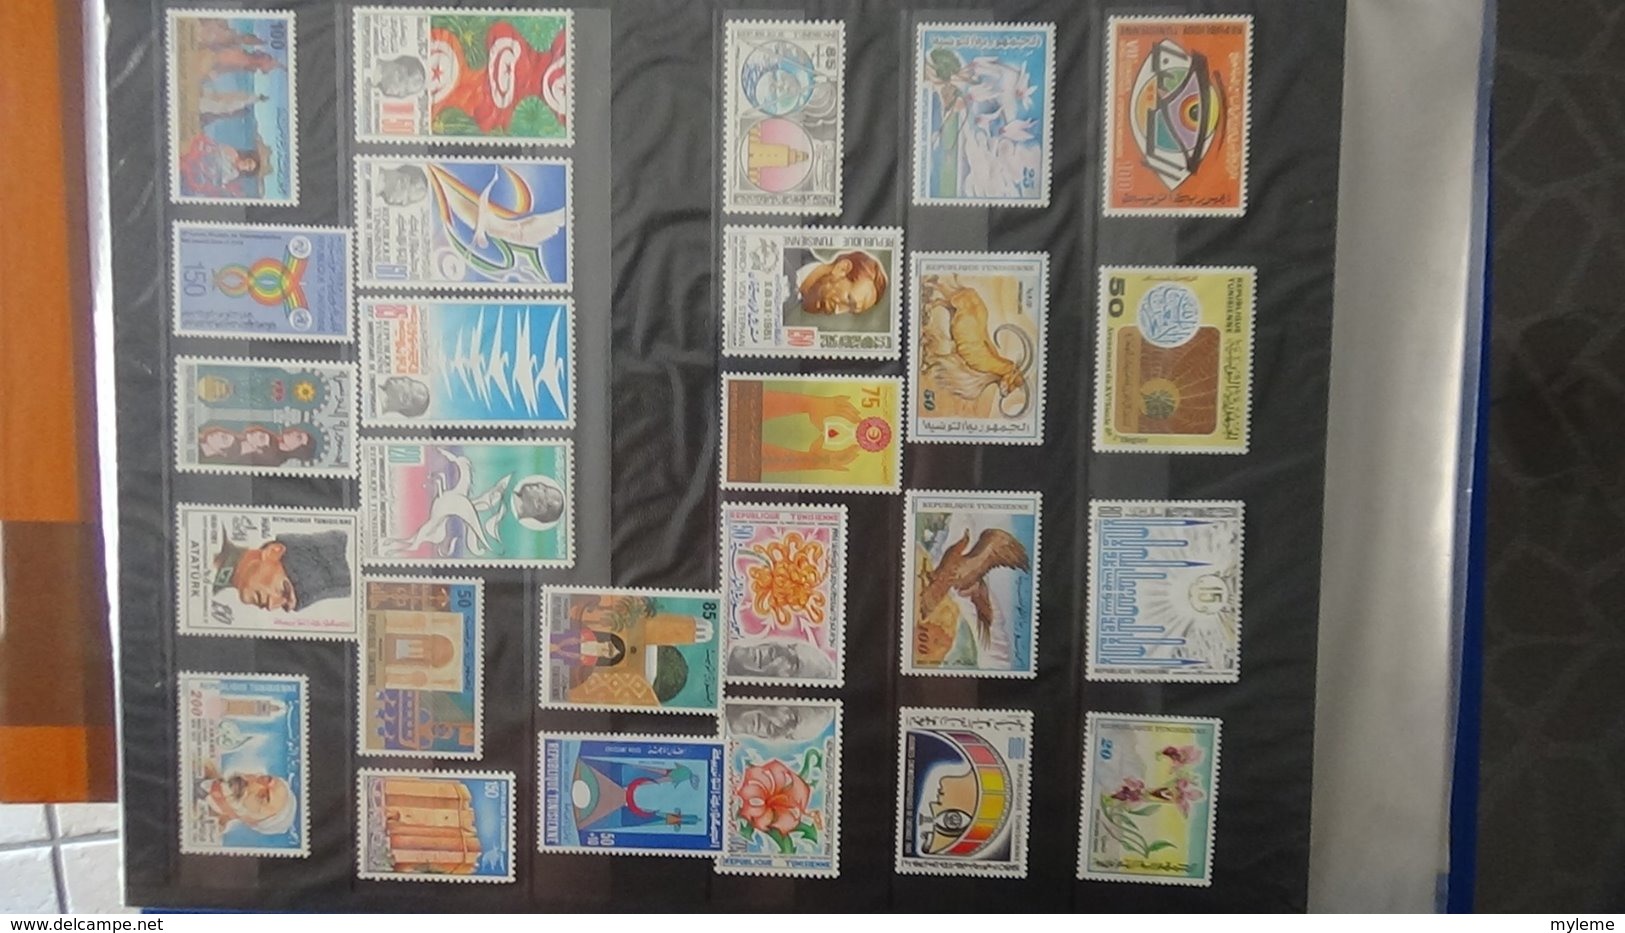 Classeur de timbres ** d'Algérie, Maroc, Tunise et Vanuatu à saisir !!!